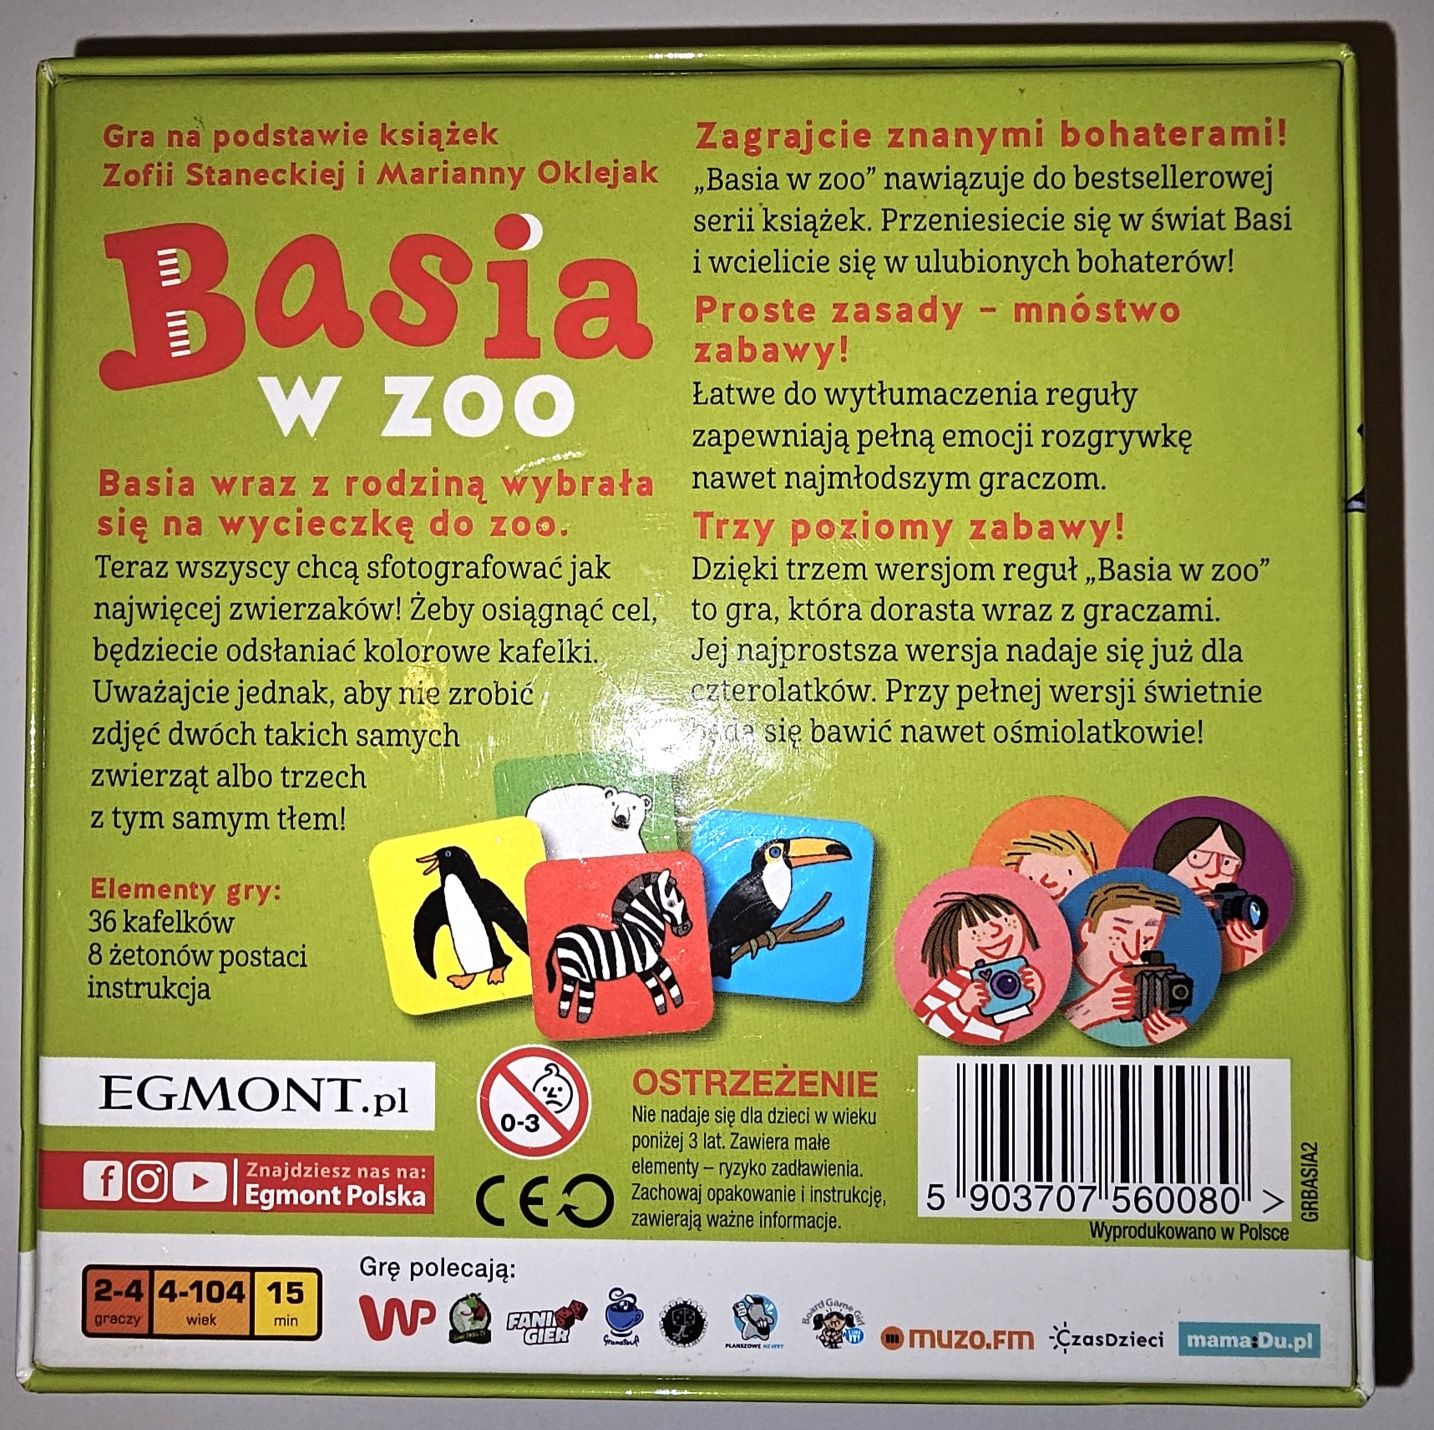 Basia w zoo gra zabawka edukacyjna familijna memory walizeczka